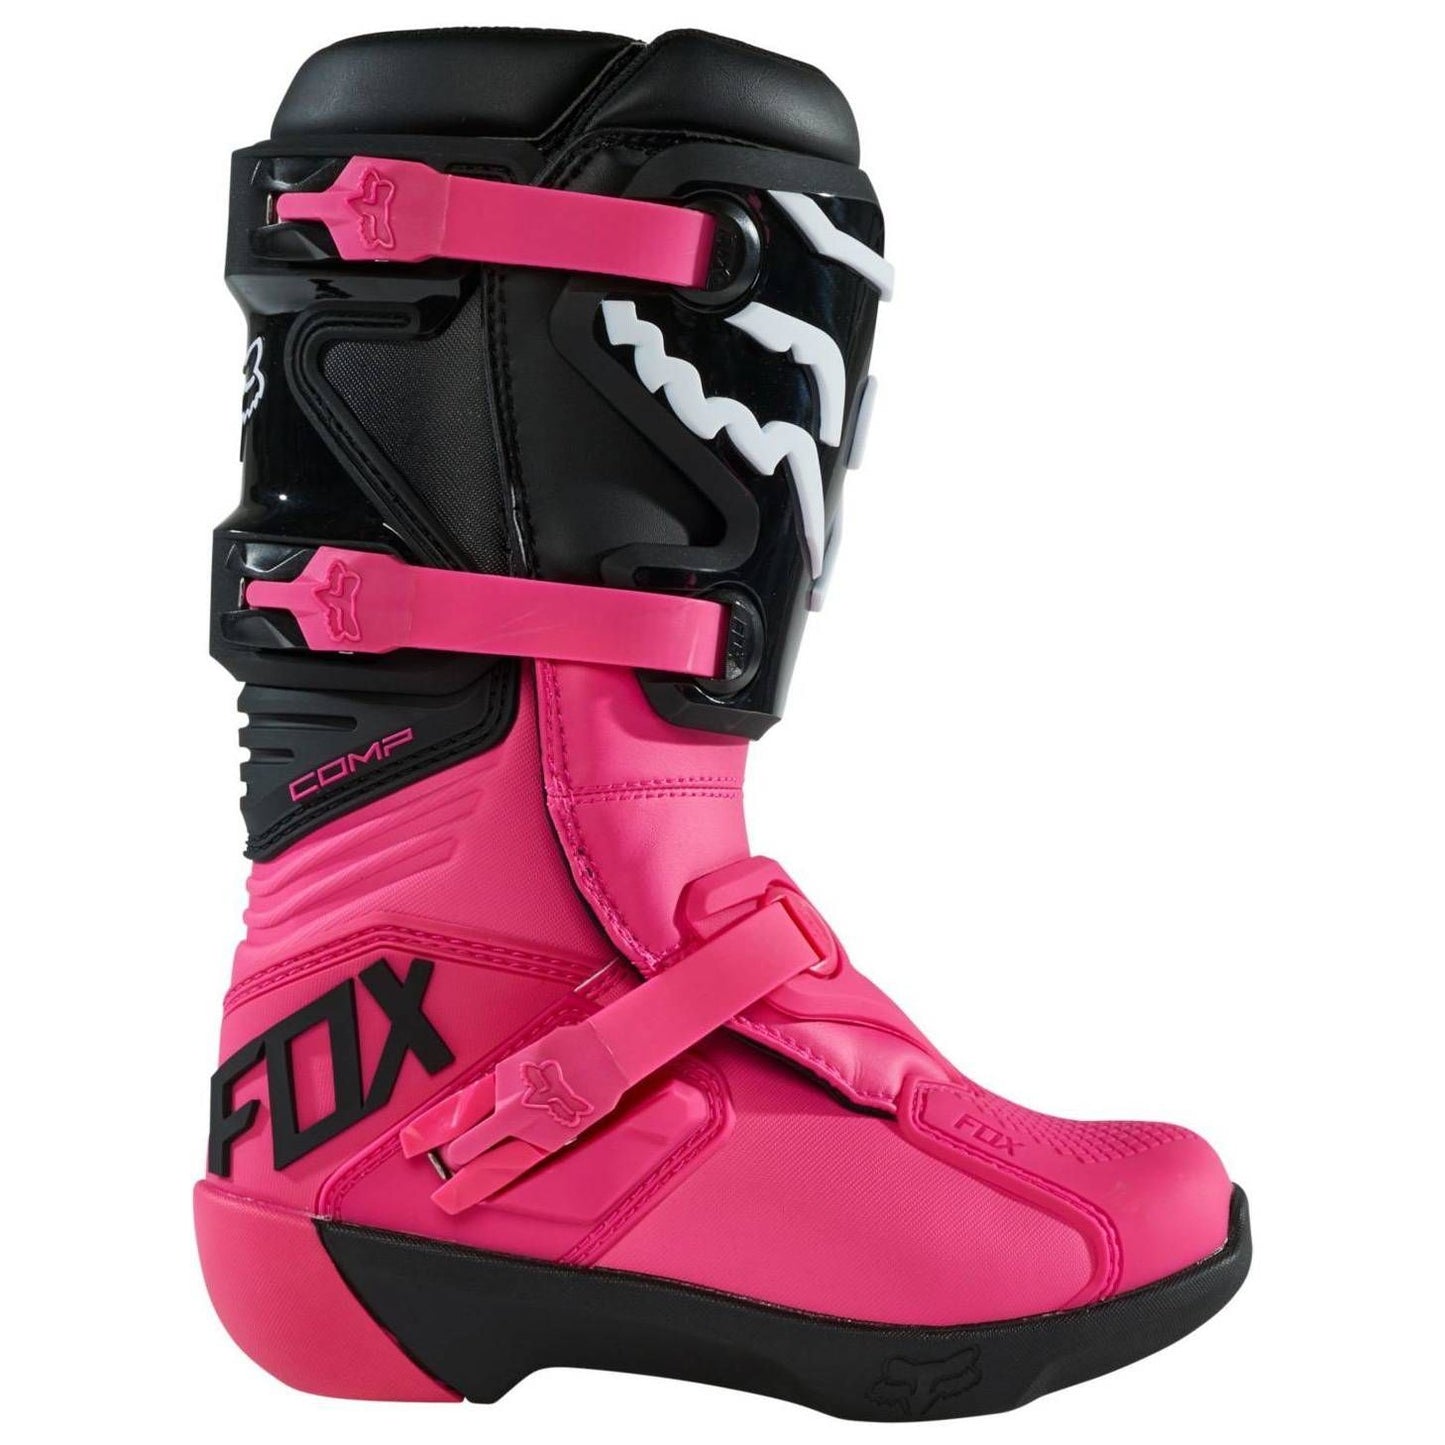 Fox Women's Comp Boots 2022